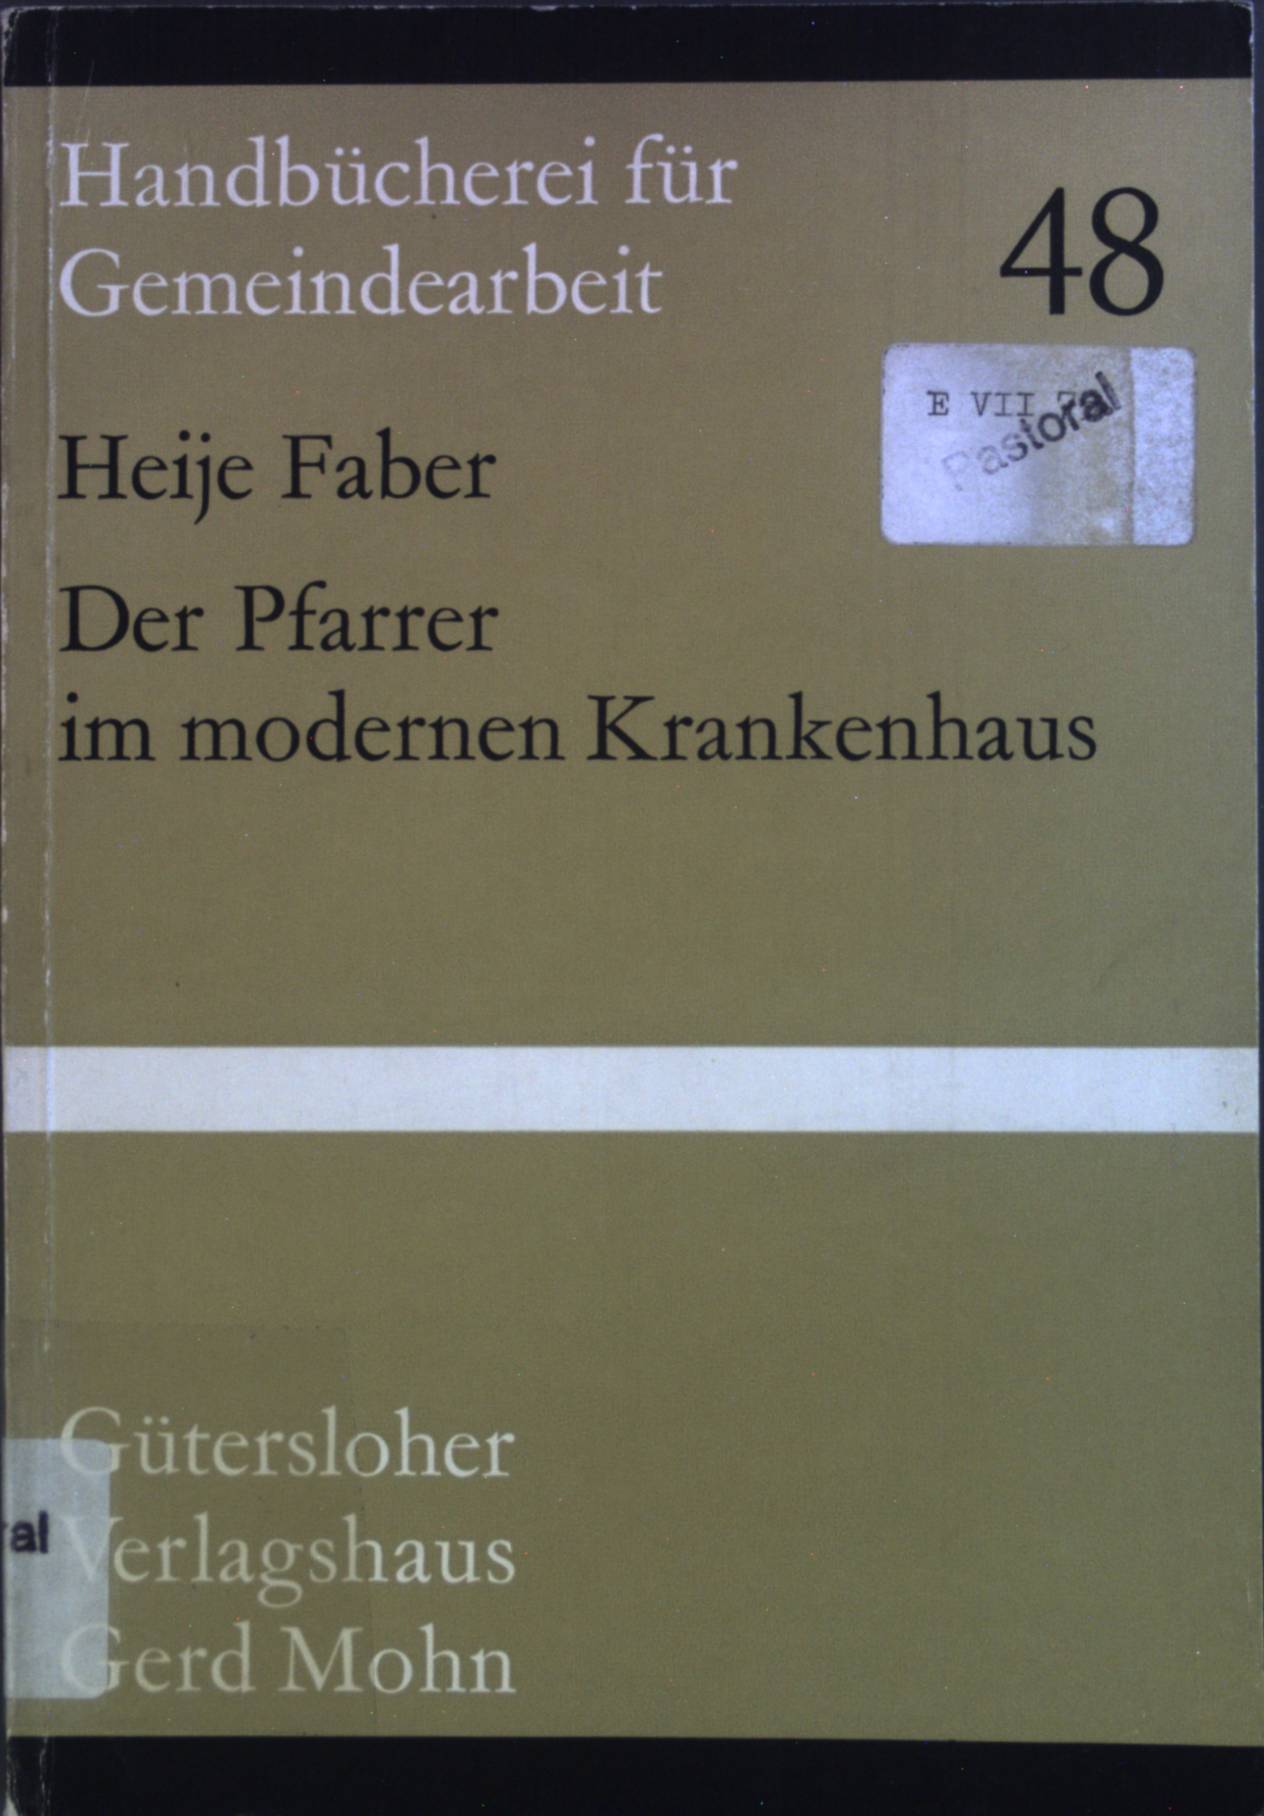 Der Pfarrer im modernen Krankenhaus. Handbücherei für Gemeindearbeit ; H. 48 - faber, Heije